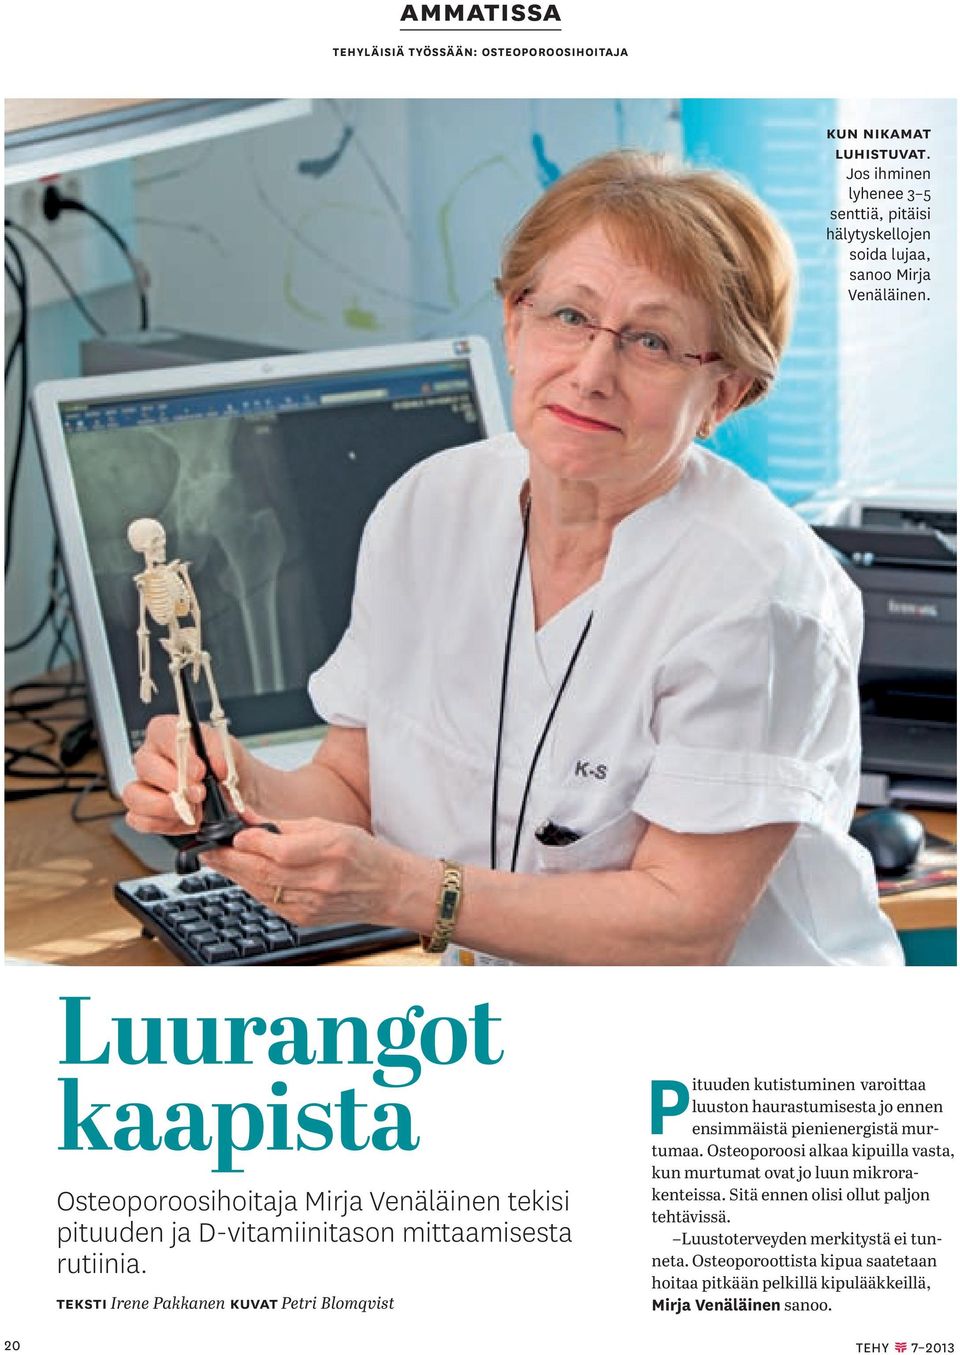 teksti Irene Pakkanen Kuvat Petri Blomqvist Pituuden kutistuminen varoittaa luuston haurastumisesta jo ennen ensimmäistä pienienergistä murtumaa.